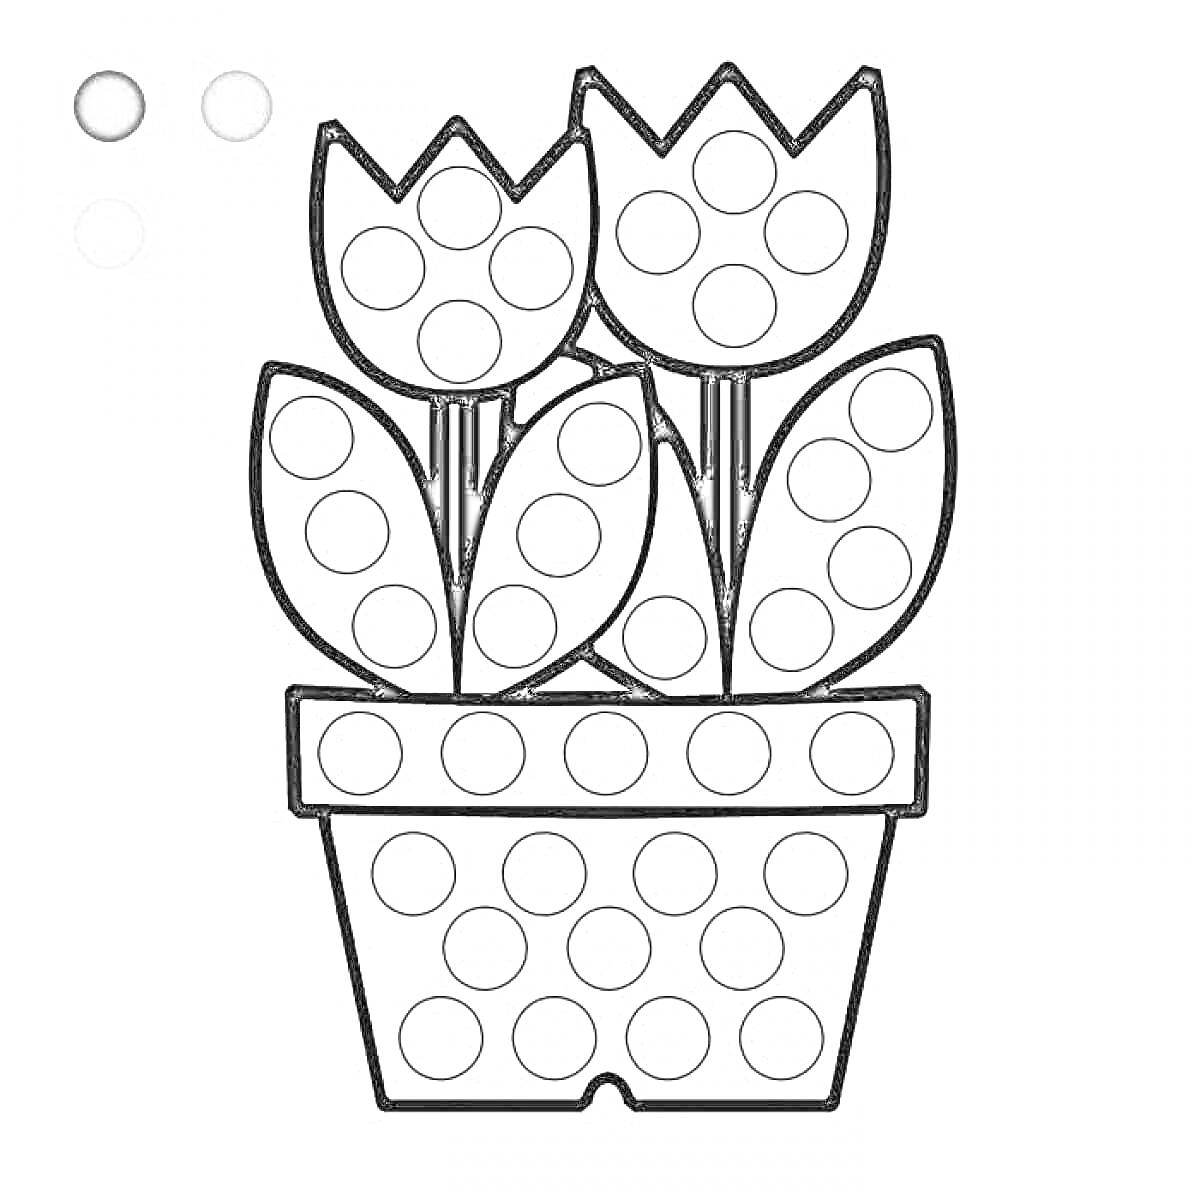 Раскраска цветочный горшок с тремя тюльпанами, листьями и кругами для пальчиков